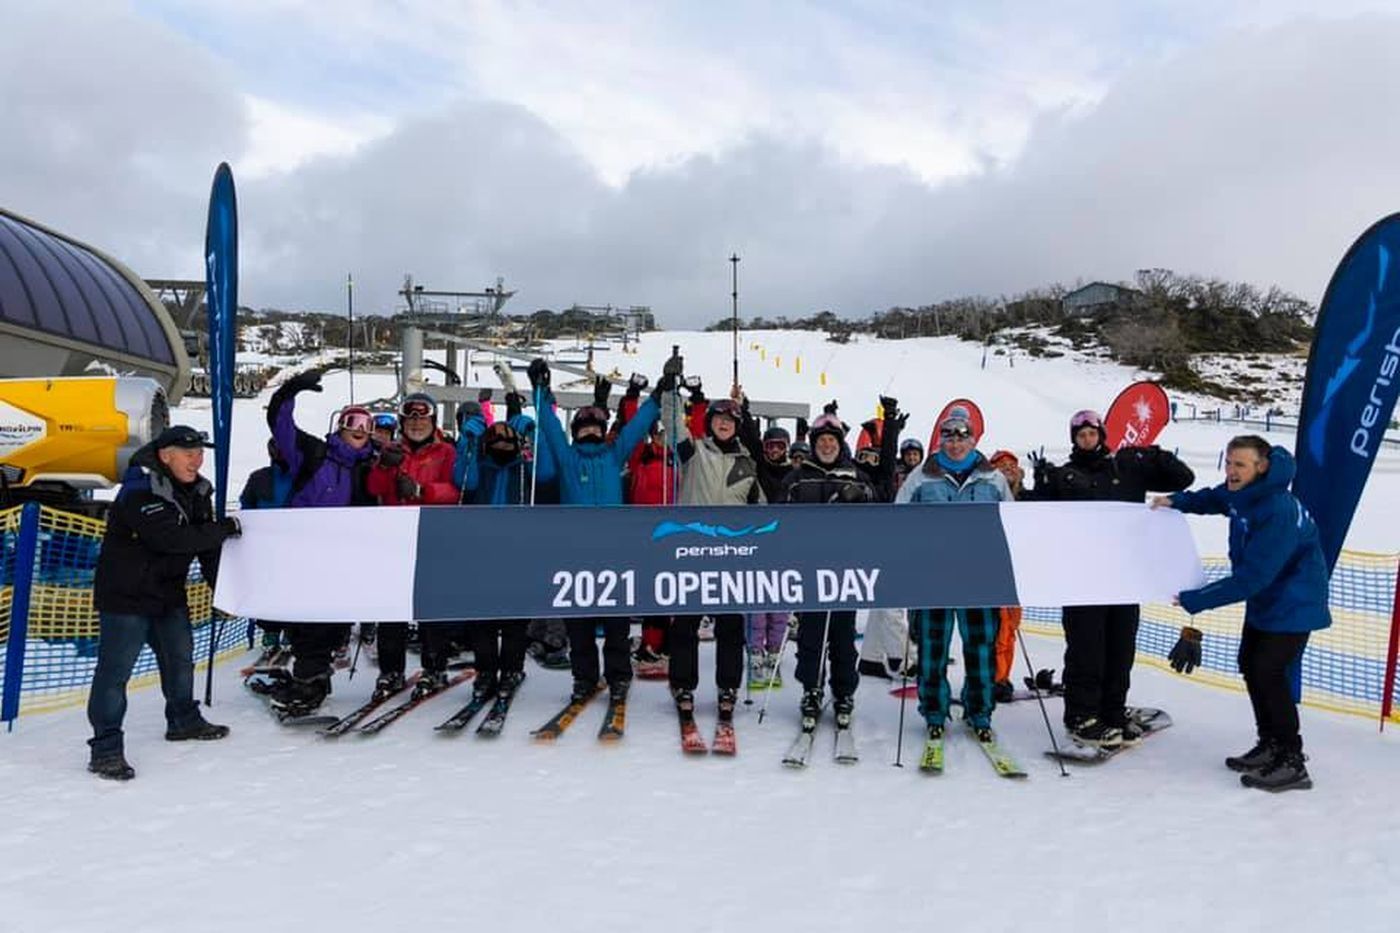 Australia has already opened its own ski season